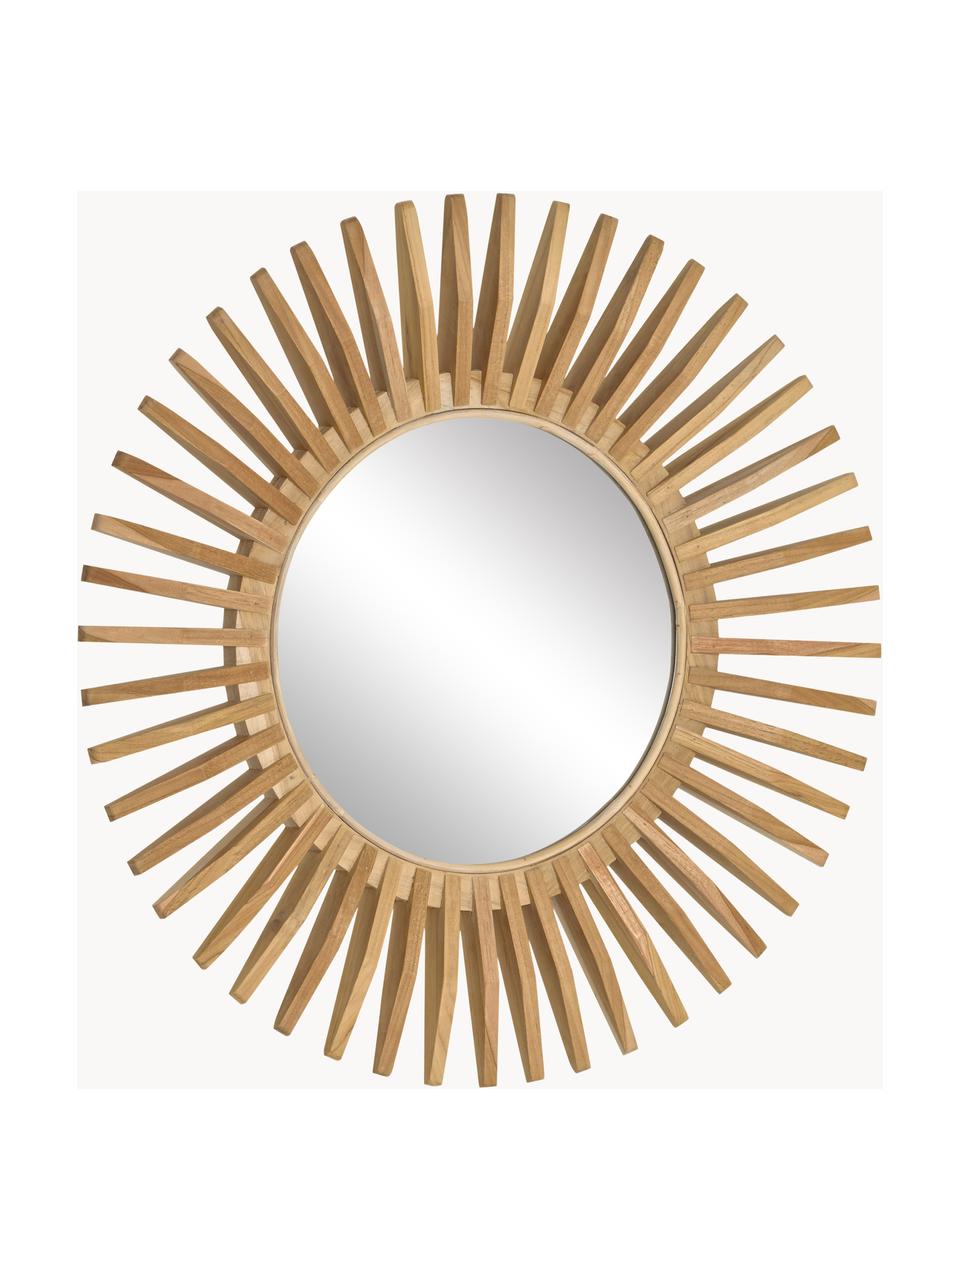 Kulaté nástěnné zrcadlo s rámem z teakového dřeva Ena, Teakové dřevo, Ø 80 cm, H 6 cm